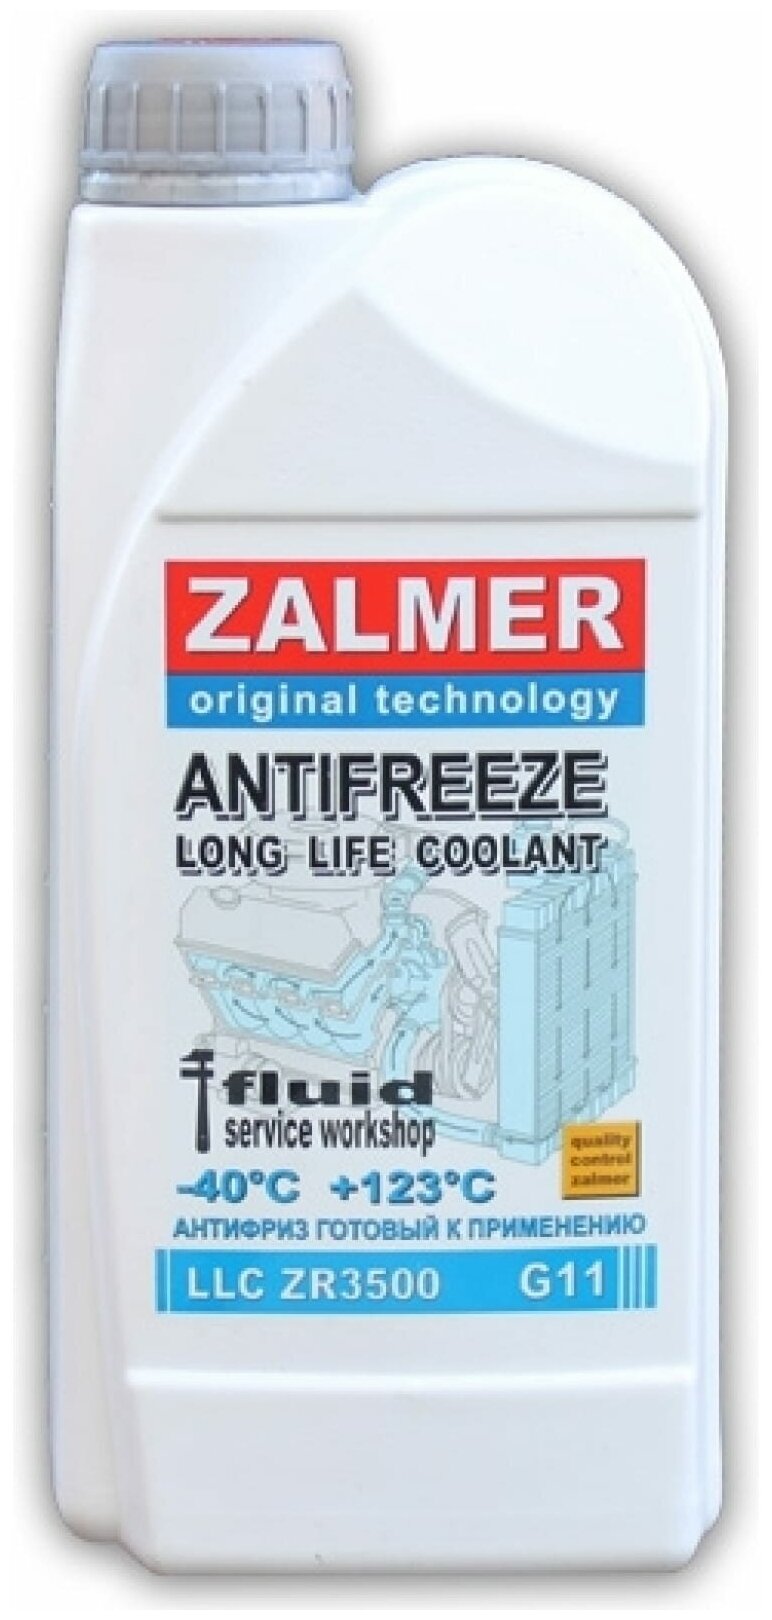 ZALMER Антифриз Antifreeze ZR3500 LLC G11 синий -35С 1кг нетто ZR35L001